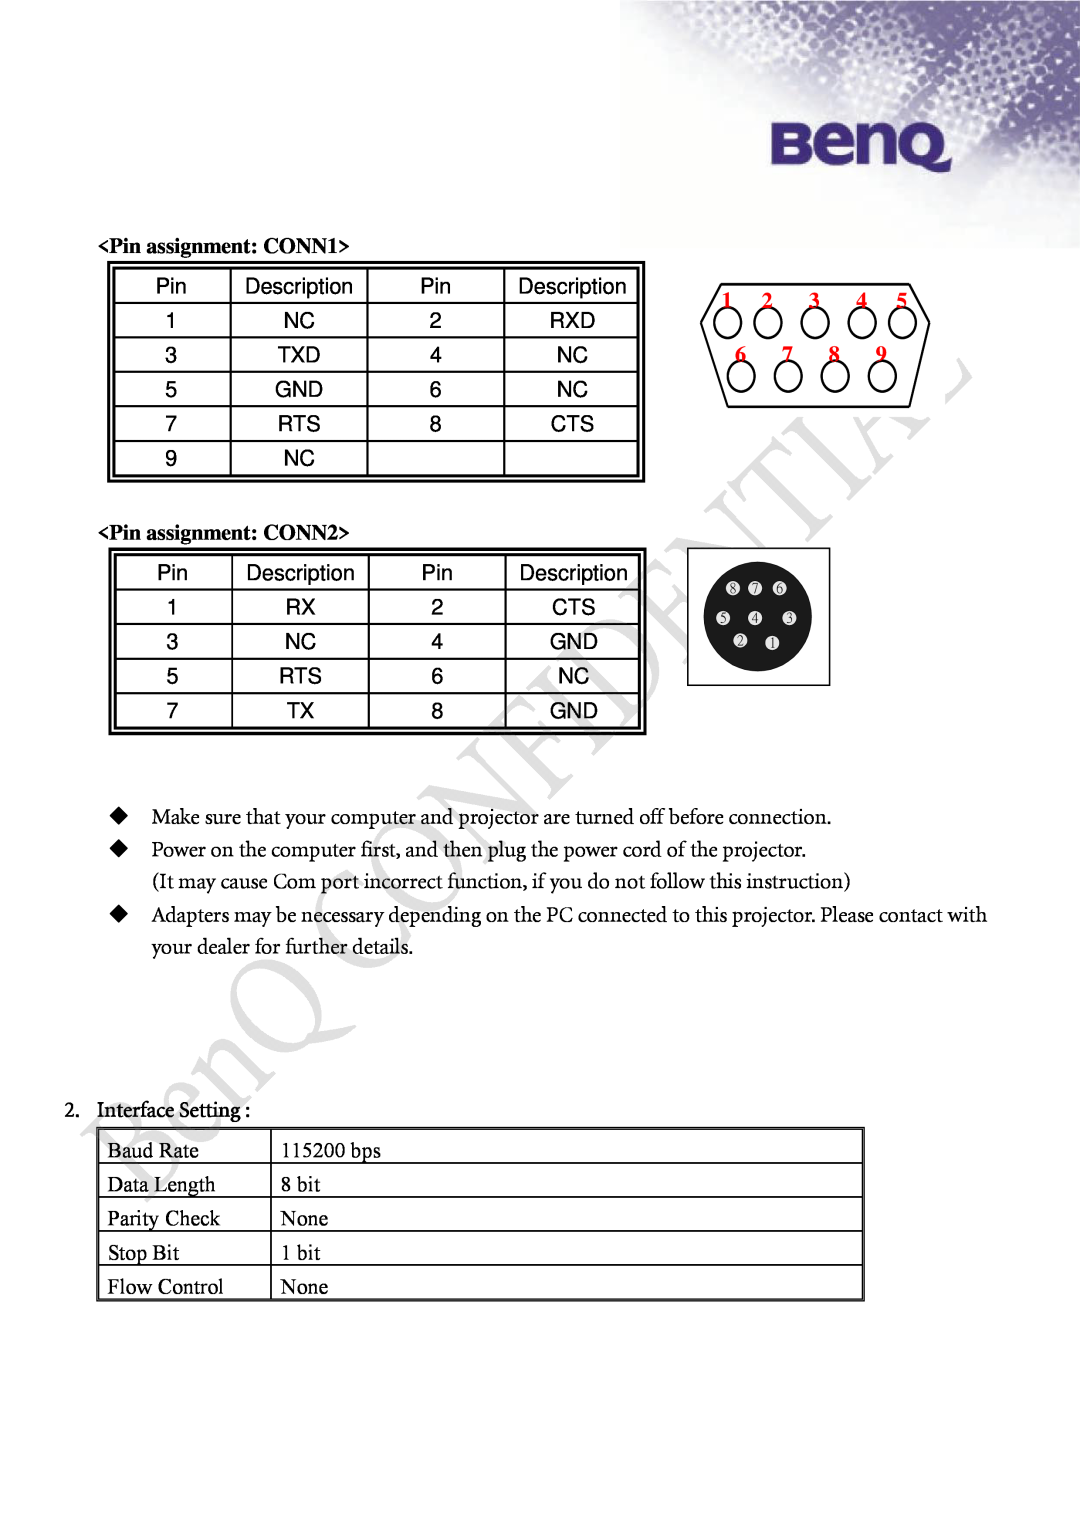 BenQ SP870 manual Pin assignment CONN1, Pin assignment CONN2, Interface Setting, 1 2 3 4, Description 